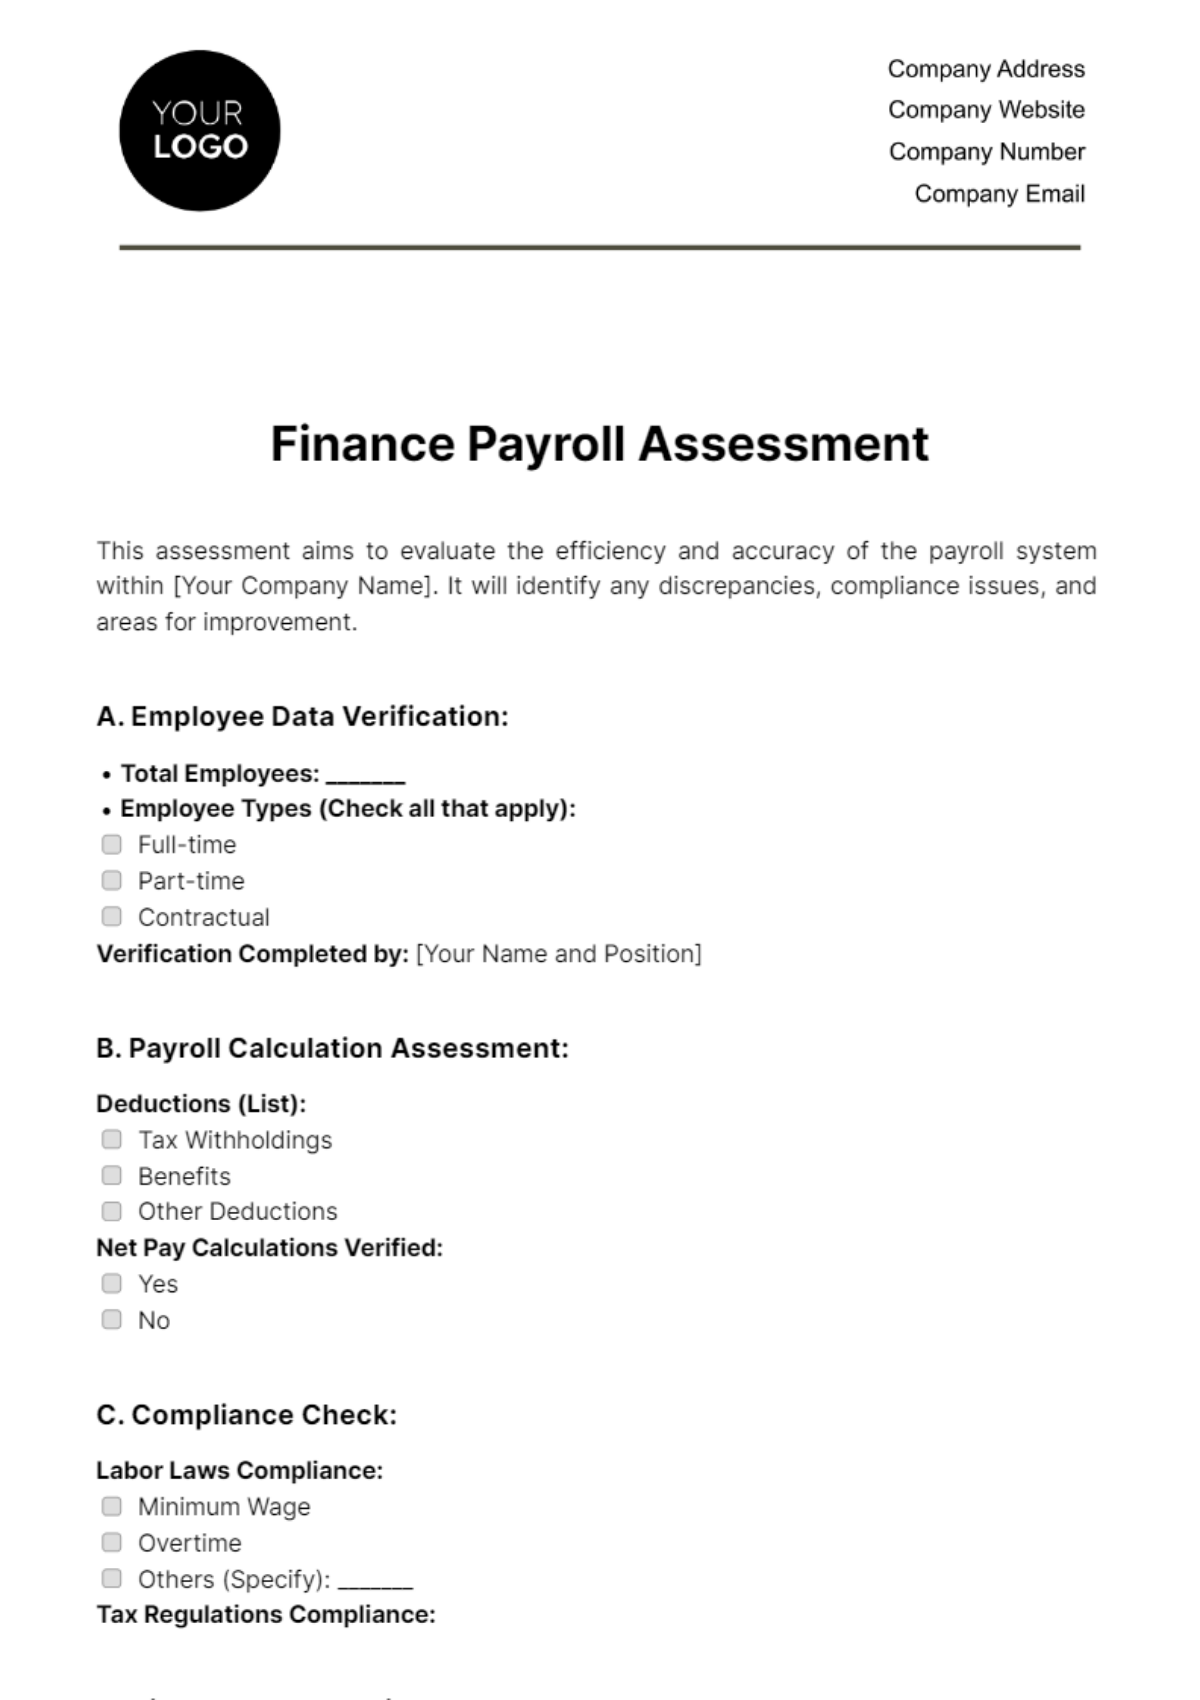 Free Finance Payroll Assessment Template